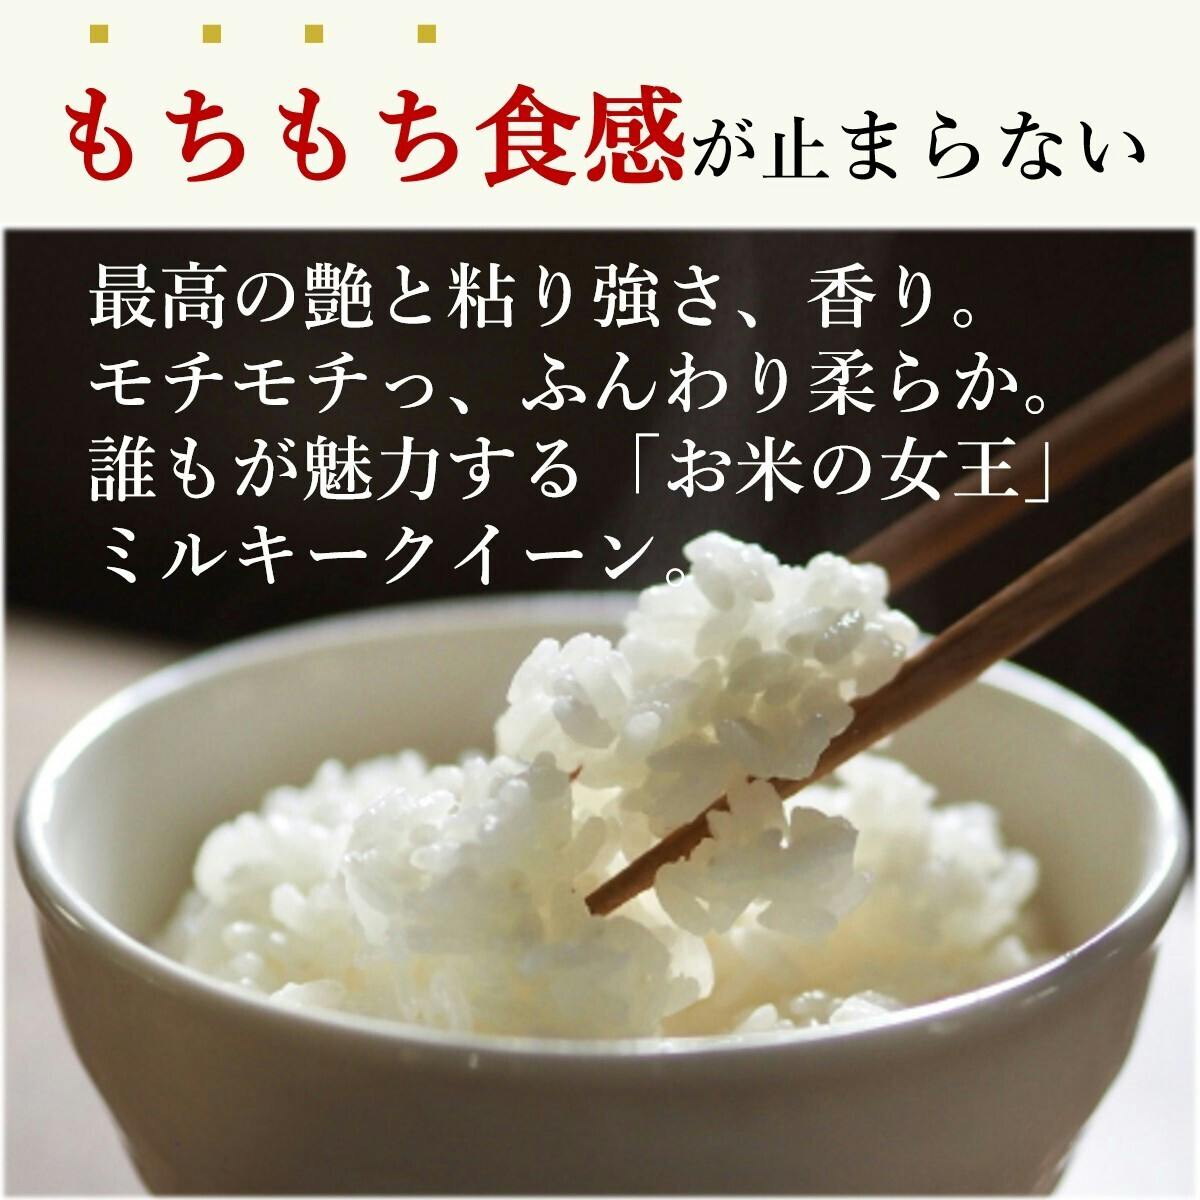 米 精米 5kg×2 モチモチ柔らかなお米です♪ - 米・雑穀・粉類